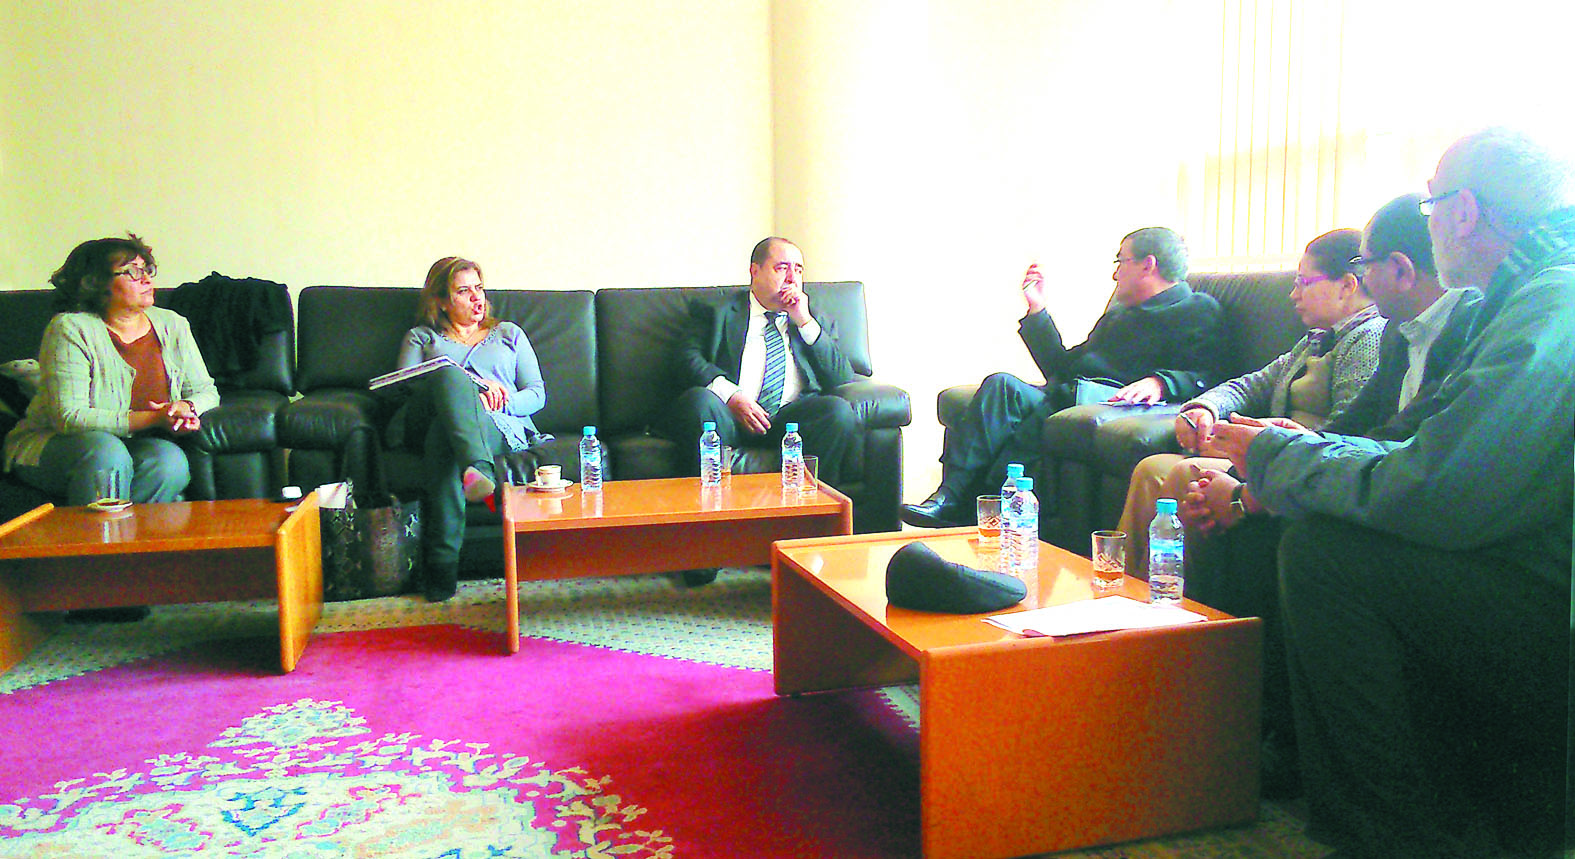 Driss Lachguar s’entretient avec les membres du Bureau central de l’AMDH